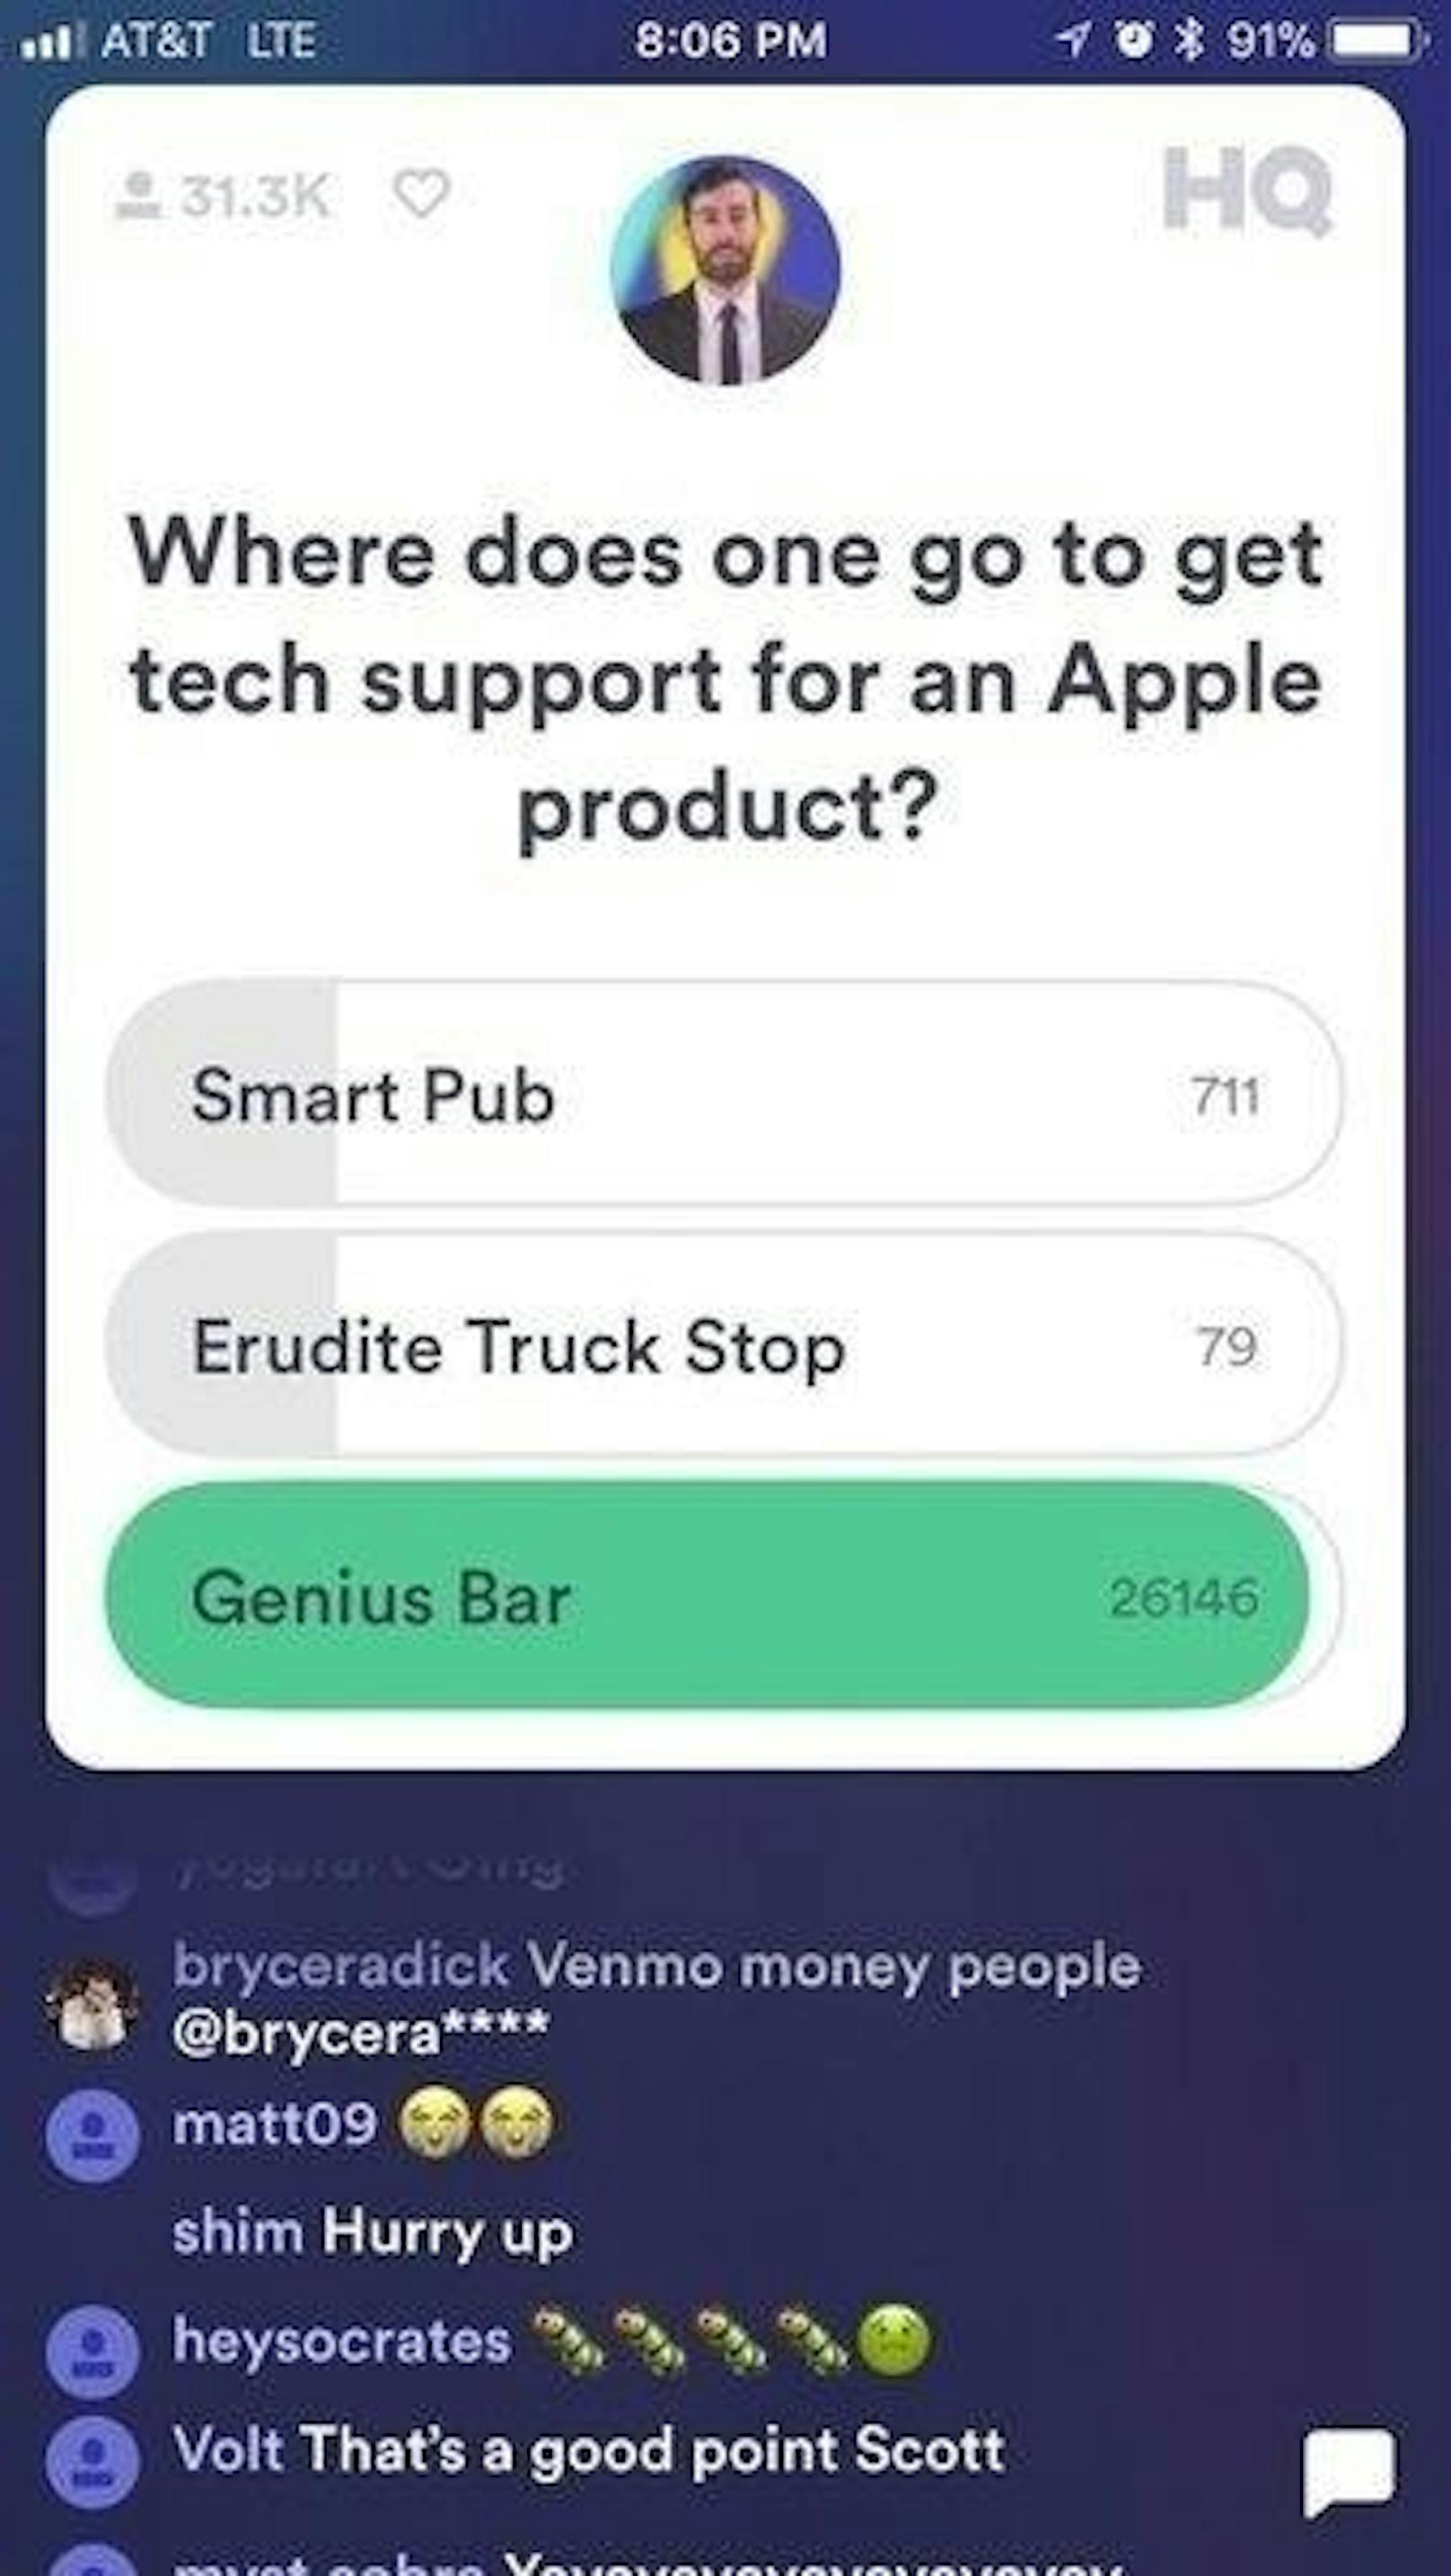 ... oder "Wo geht man hin, wenn man Hilfe für ein Apple-Produkt benötigt? Smart Pub, Gebildeter Truck Shop oder Genius Bar?" ...